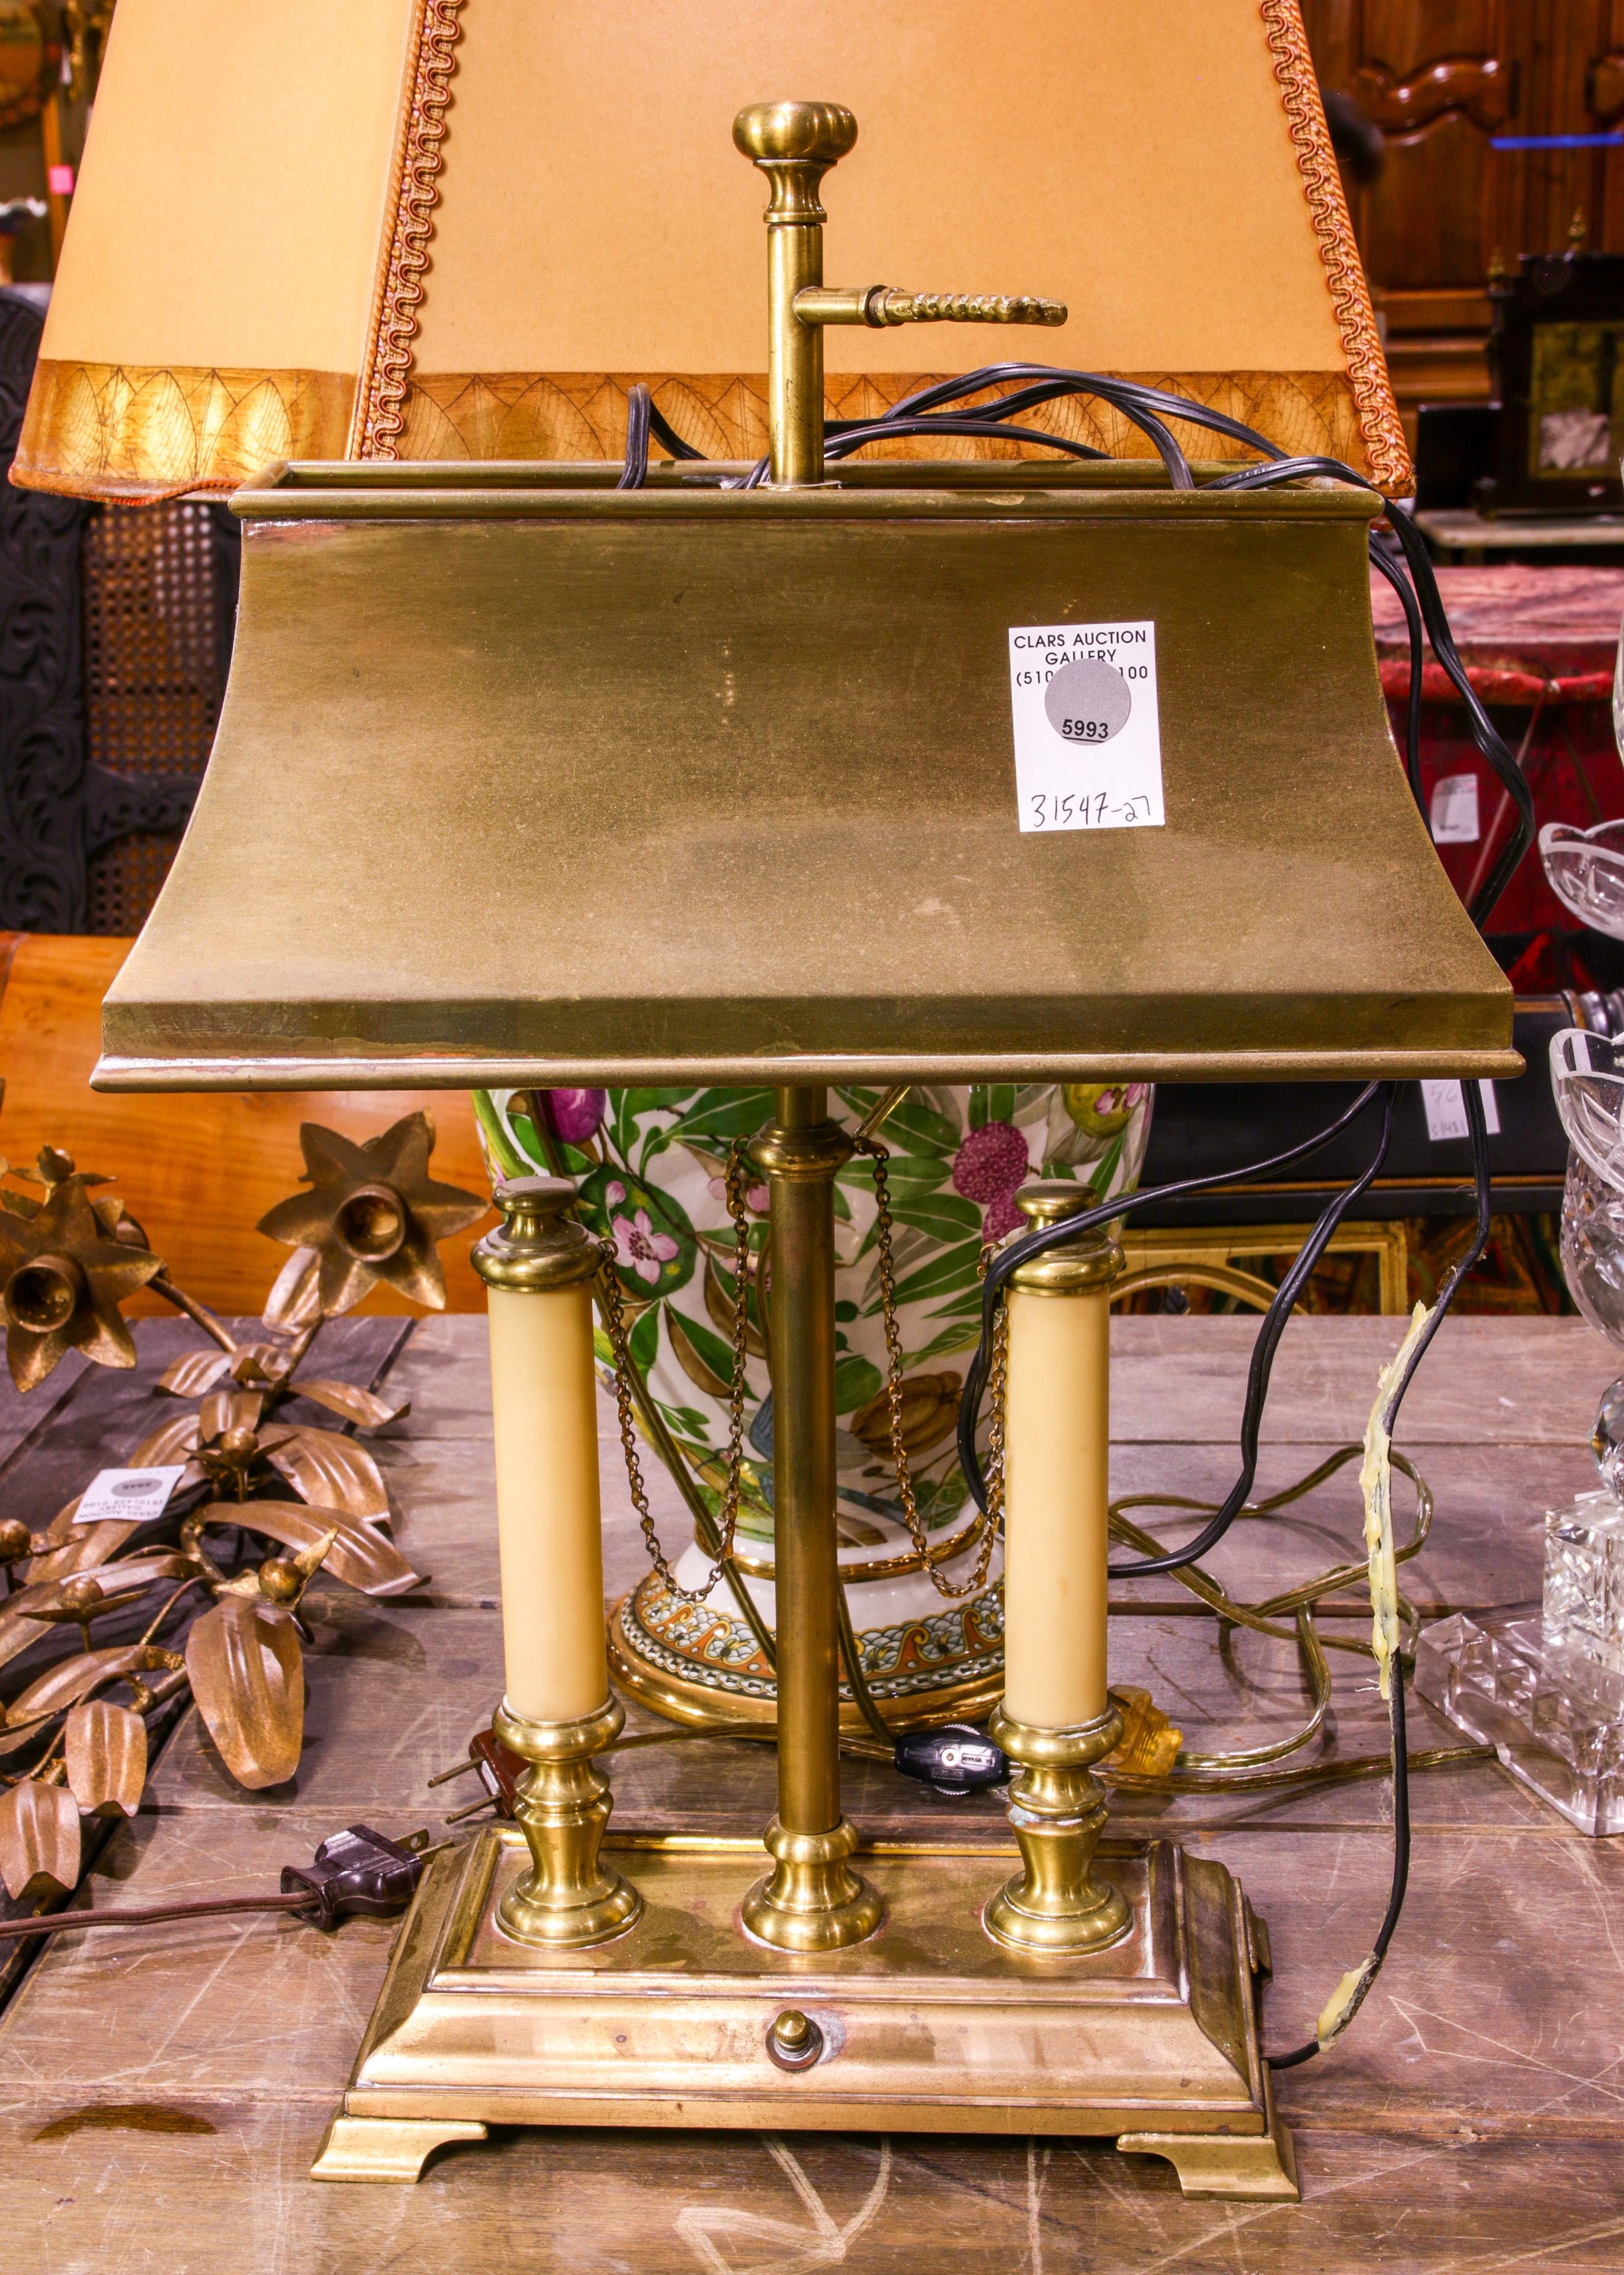 A BRASS DESK LAMP A brass desk